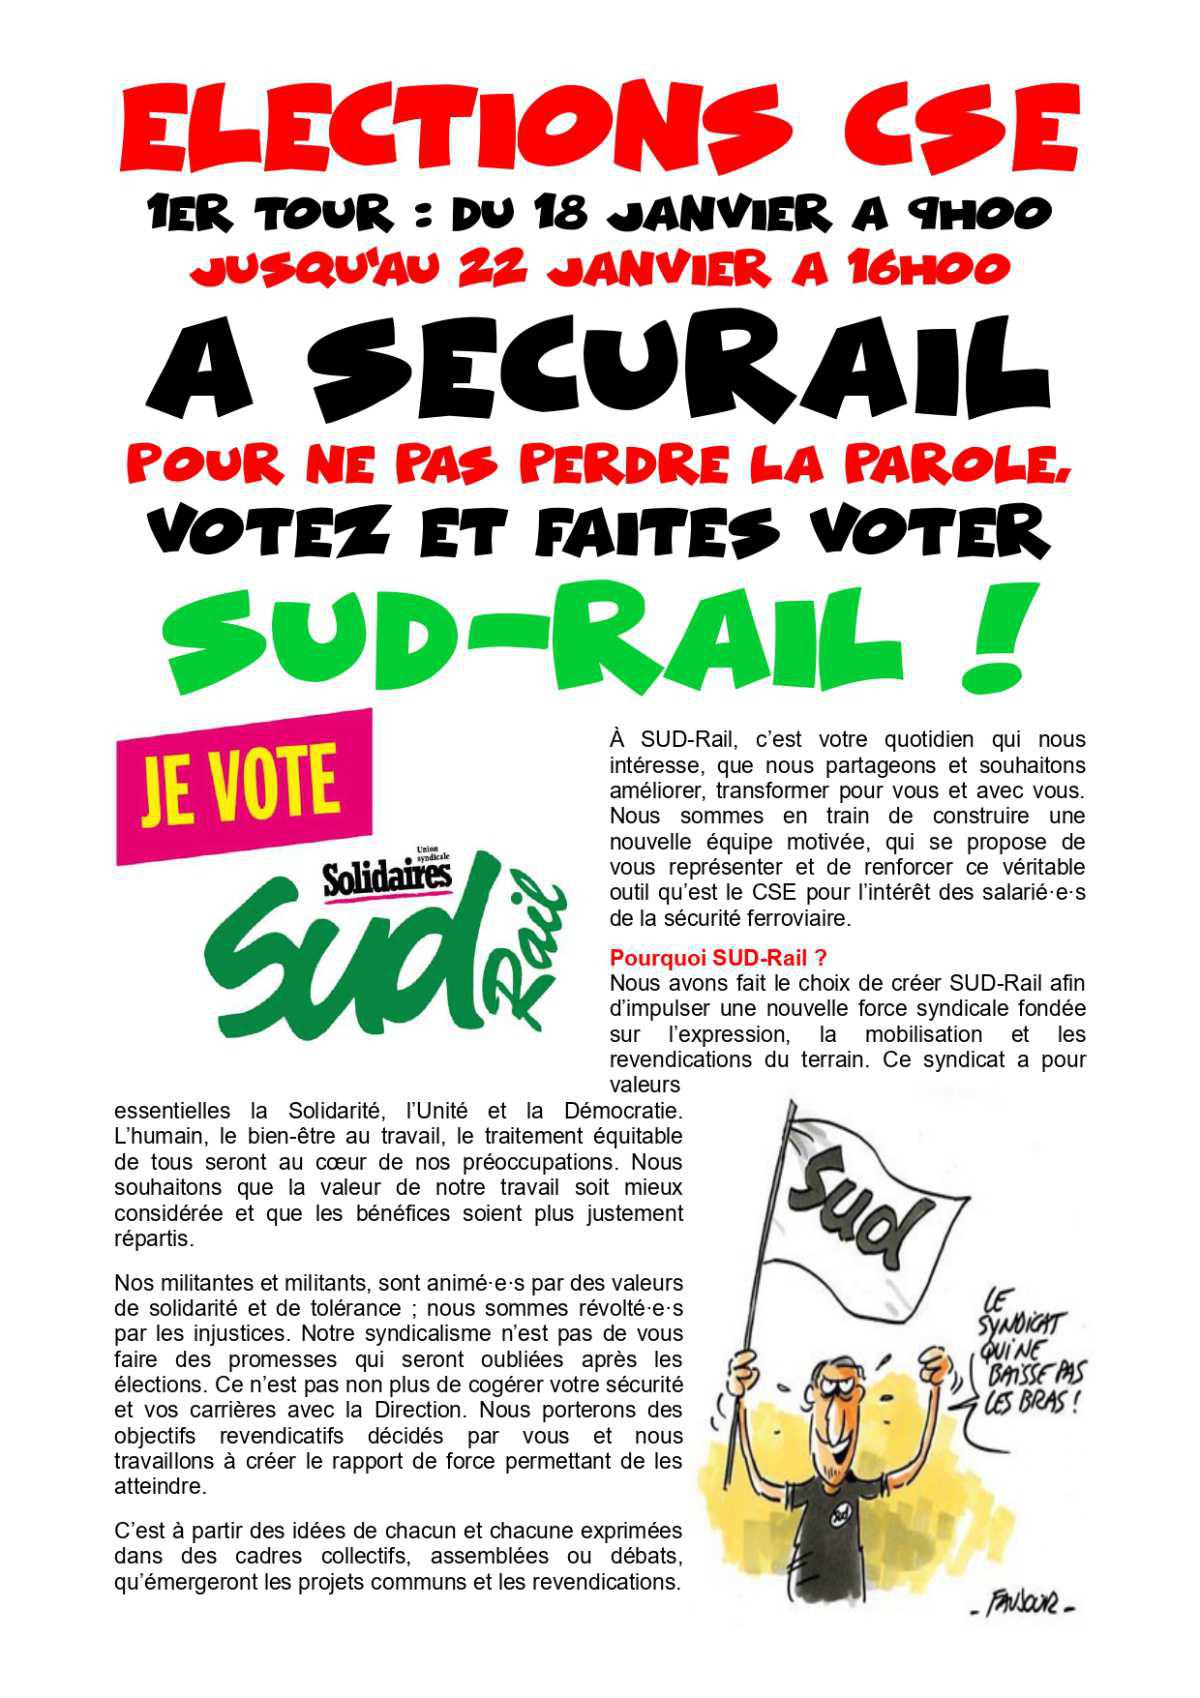 Elections CSE à SECURAIL, pour ne pas perdre le Nord, votez SUD-Rail !